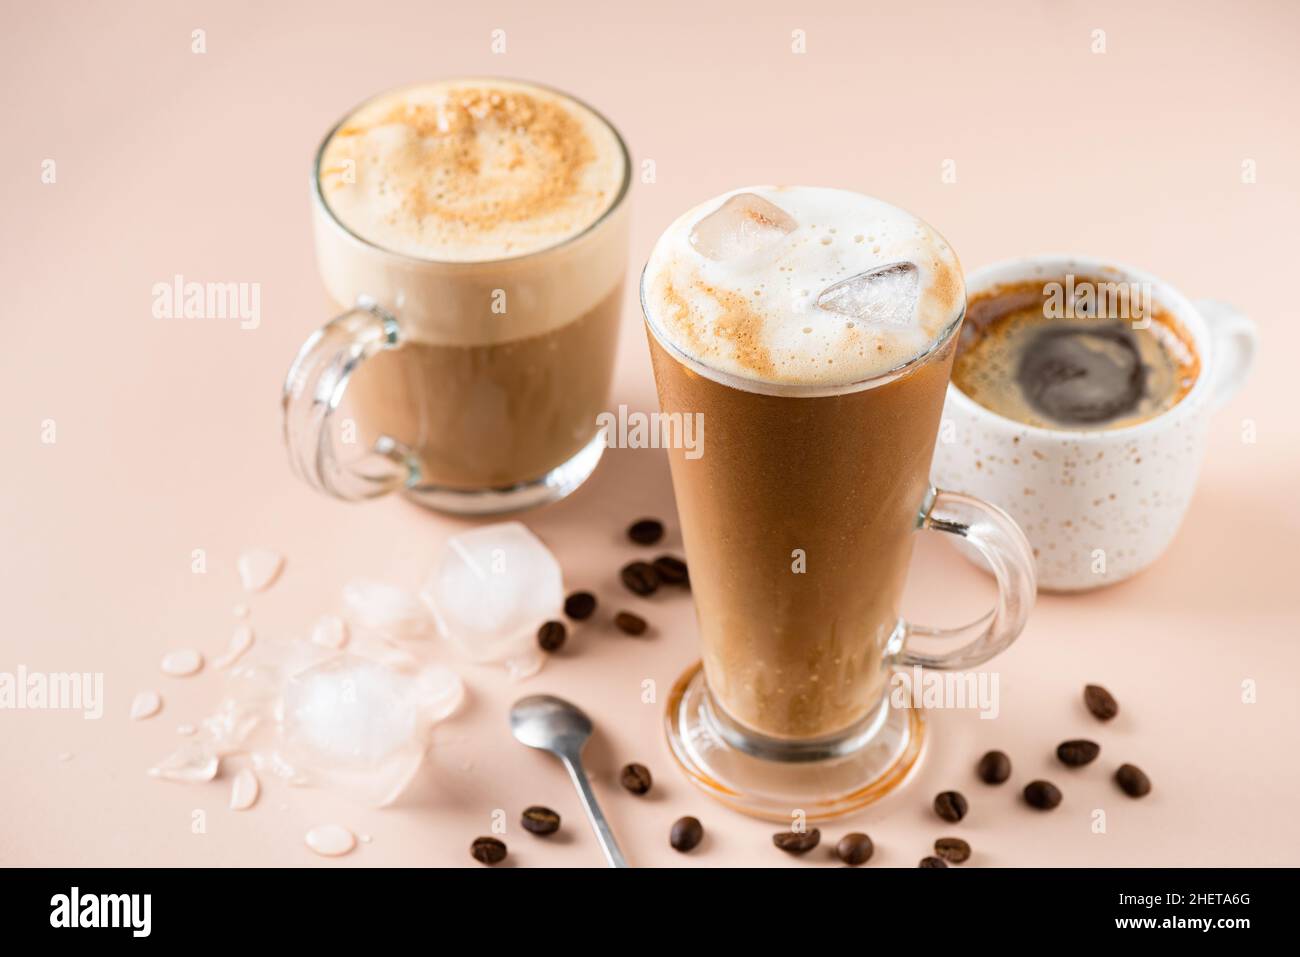 Gelato al latte in una tazza di vetro, una tazza espresso e un cappuccino. Varie bevande a base di caffè Foto Stock